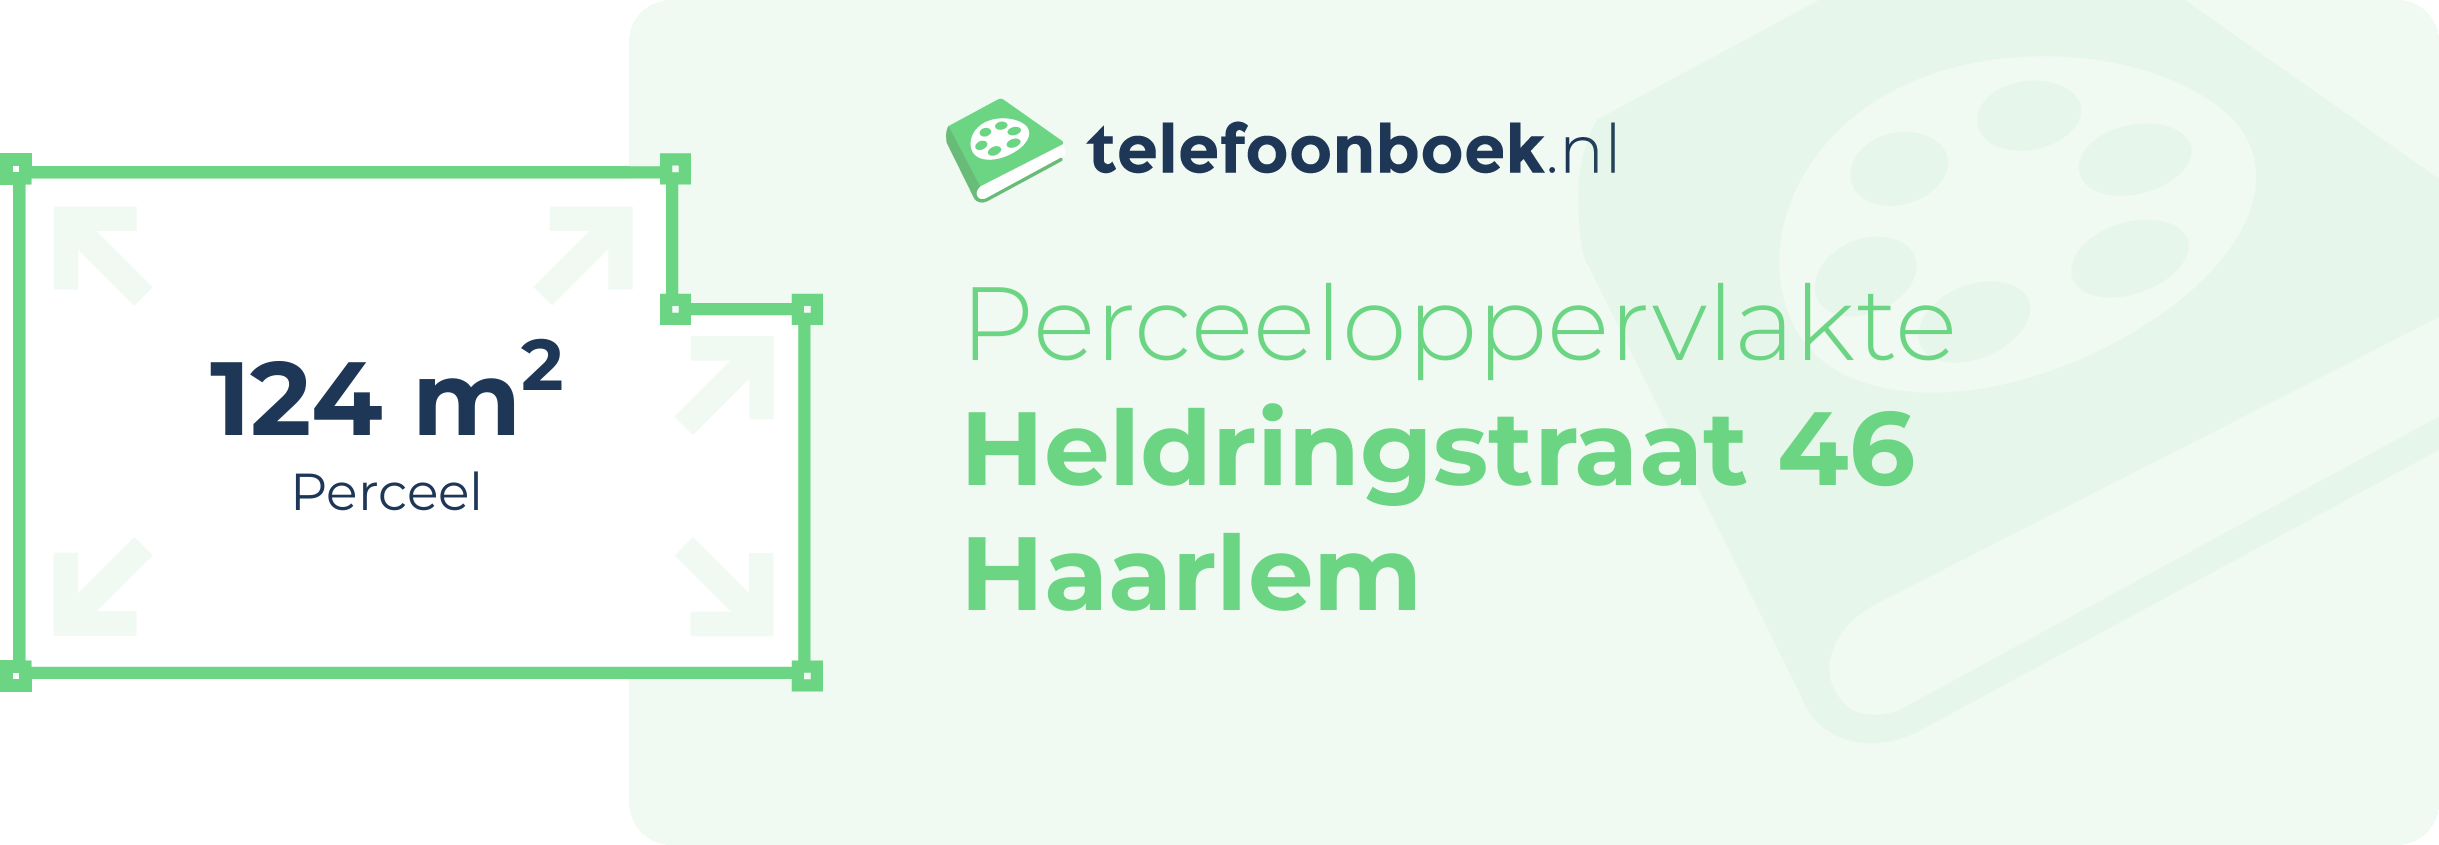 Perceeloppervlakte Heldringstraat 46 Haarlem